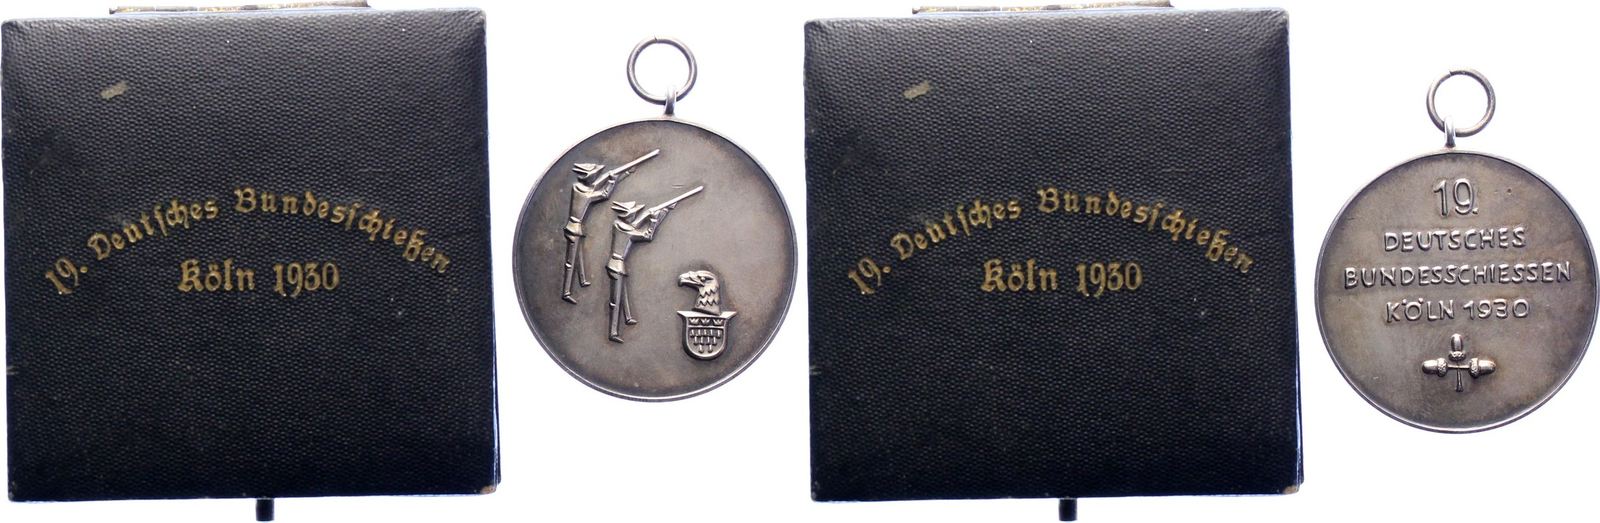 Schützenmedaillen Tragbare Silbermedaille 1930 Köln Etui mit Goldaufdruck.  Mattiert. Schöne Patina. Prägefrisch